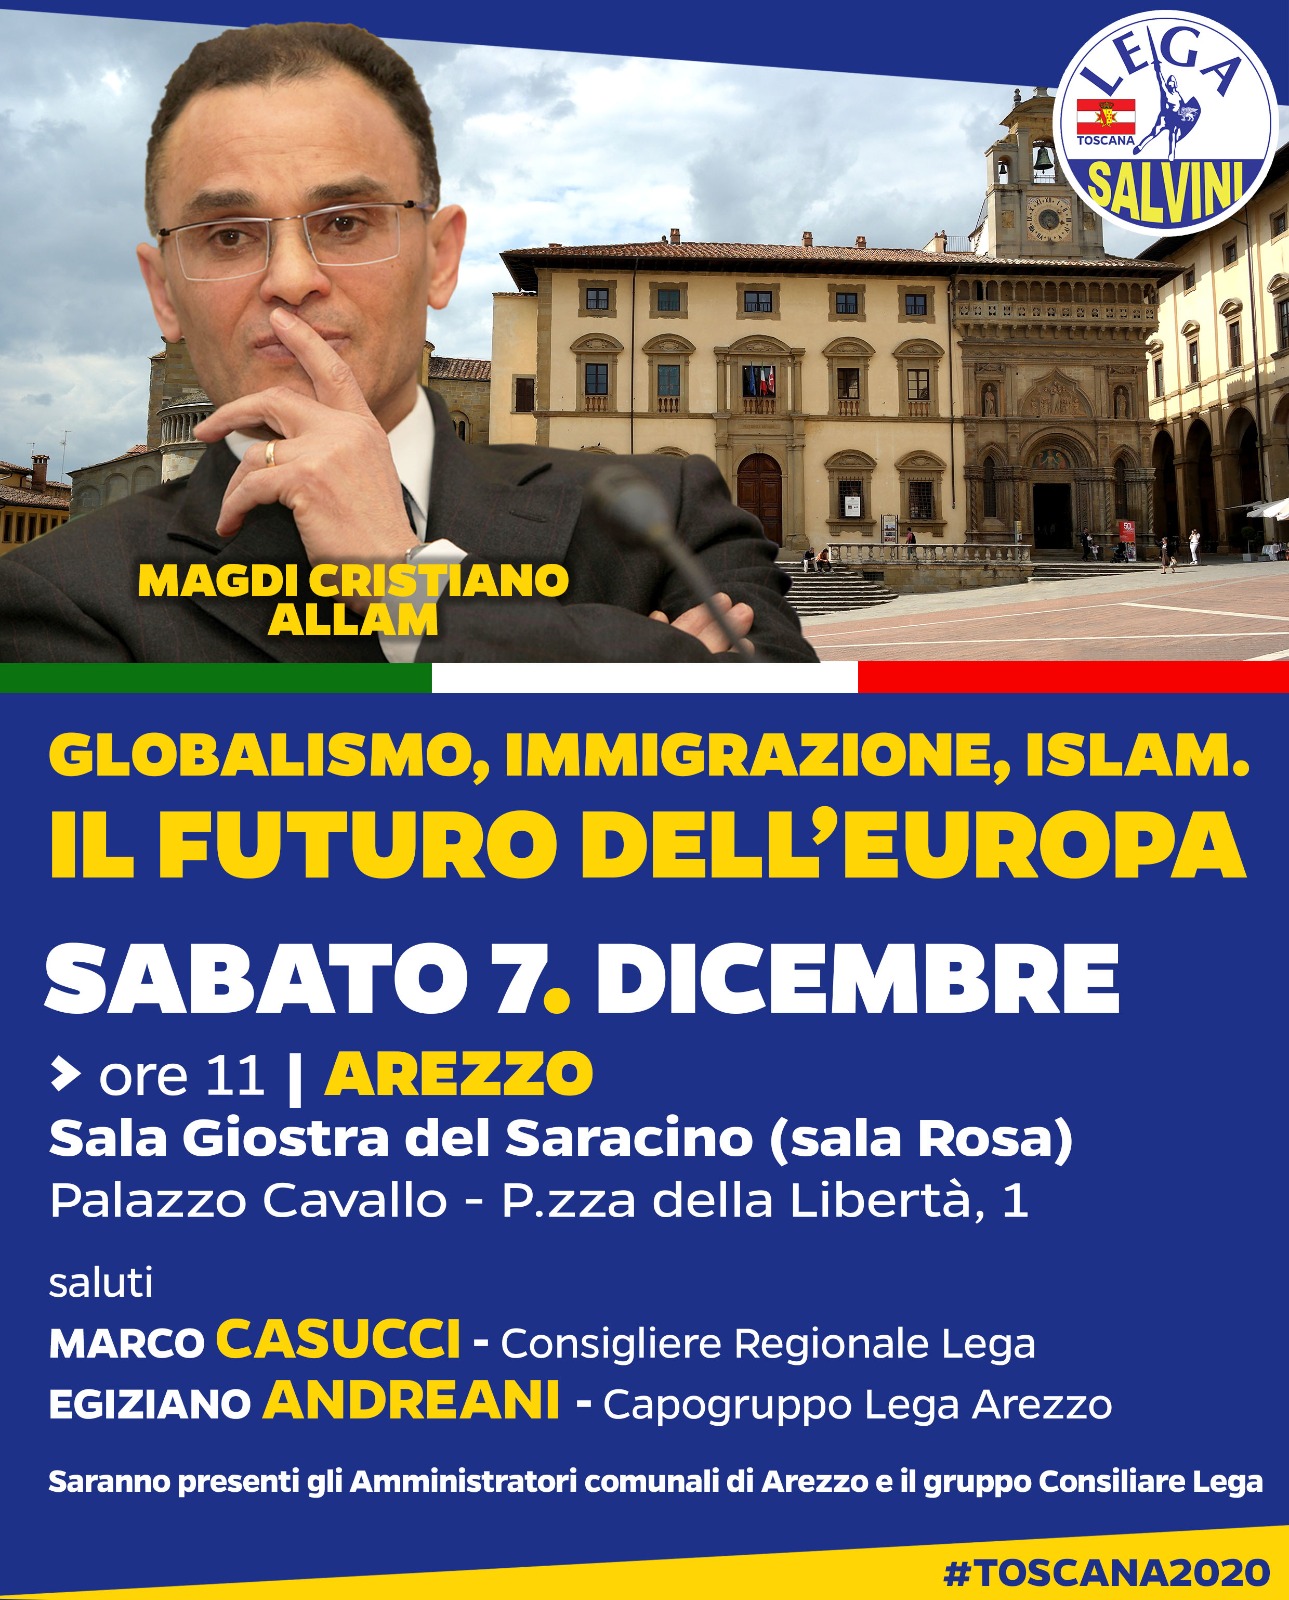 “Globalismo, Immigrazione, Islam. Il futuro dell’Europa”. Incontro con Magdi Cristiano Allam